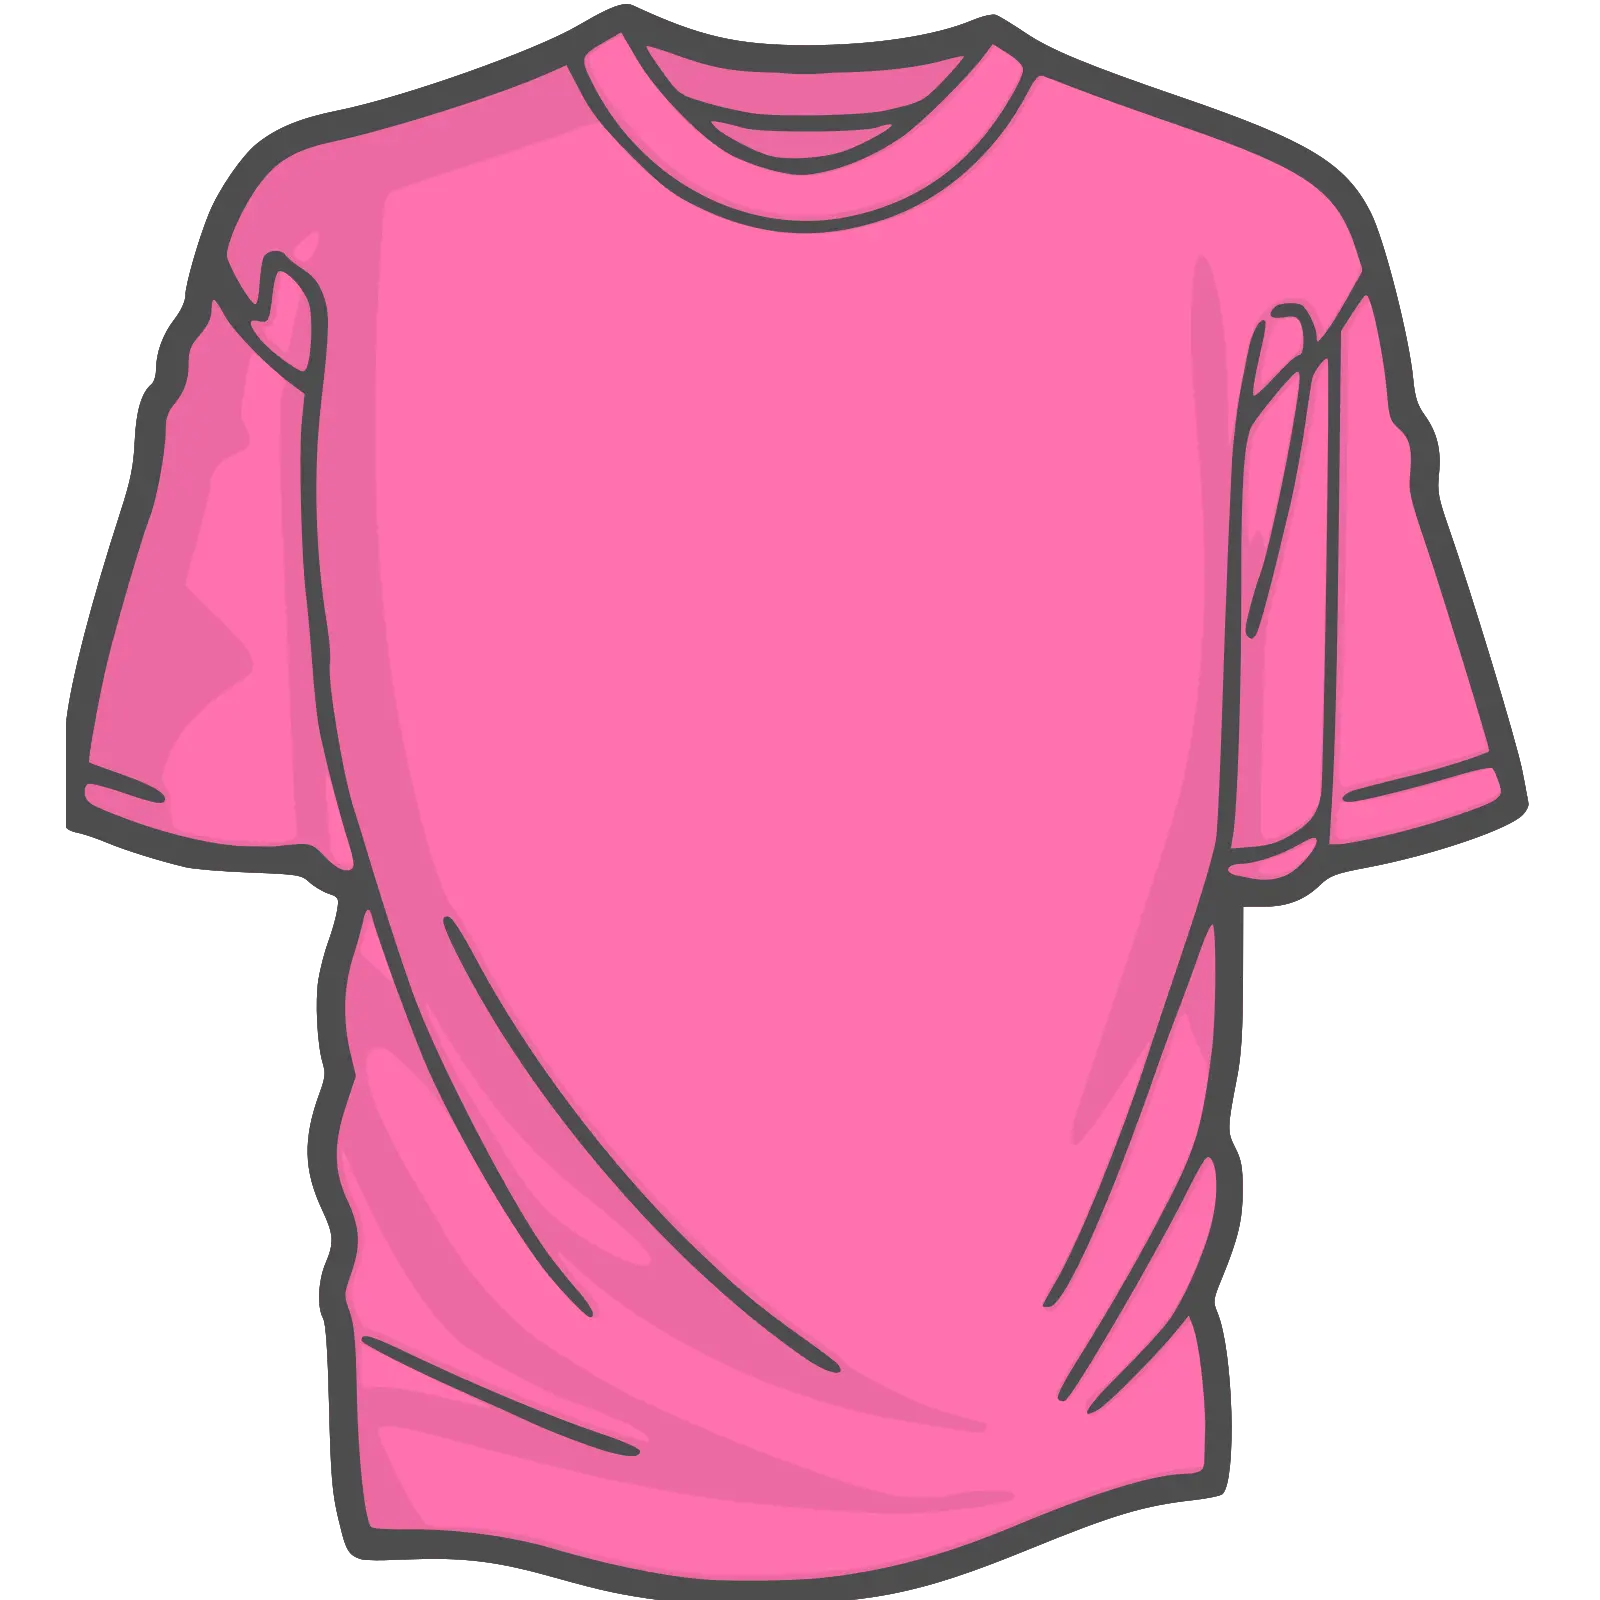 Blank T Shirt Clip Art Vector Clip Art Online Pink Shirt Clipart Png Tee Shirt Png